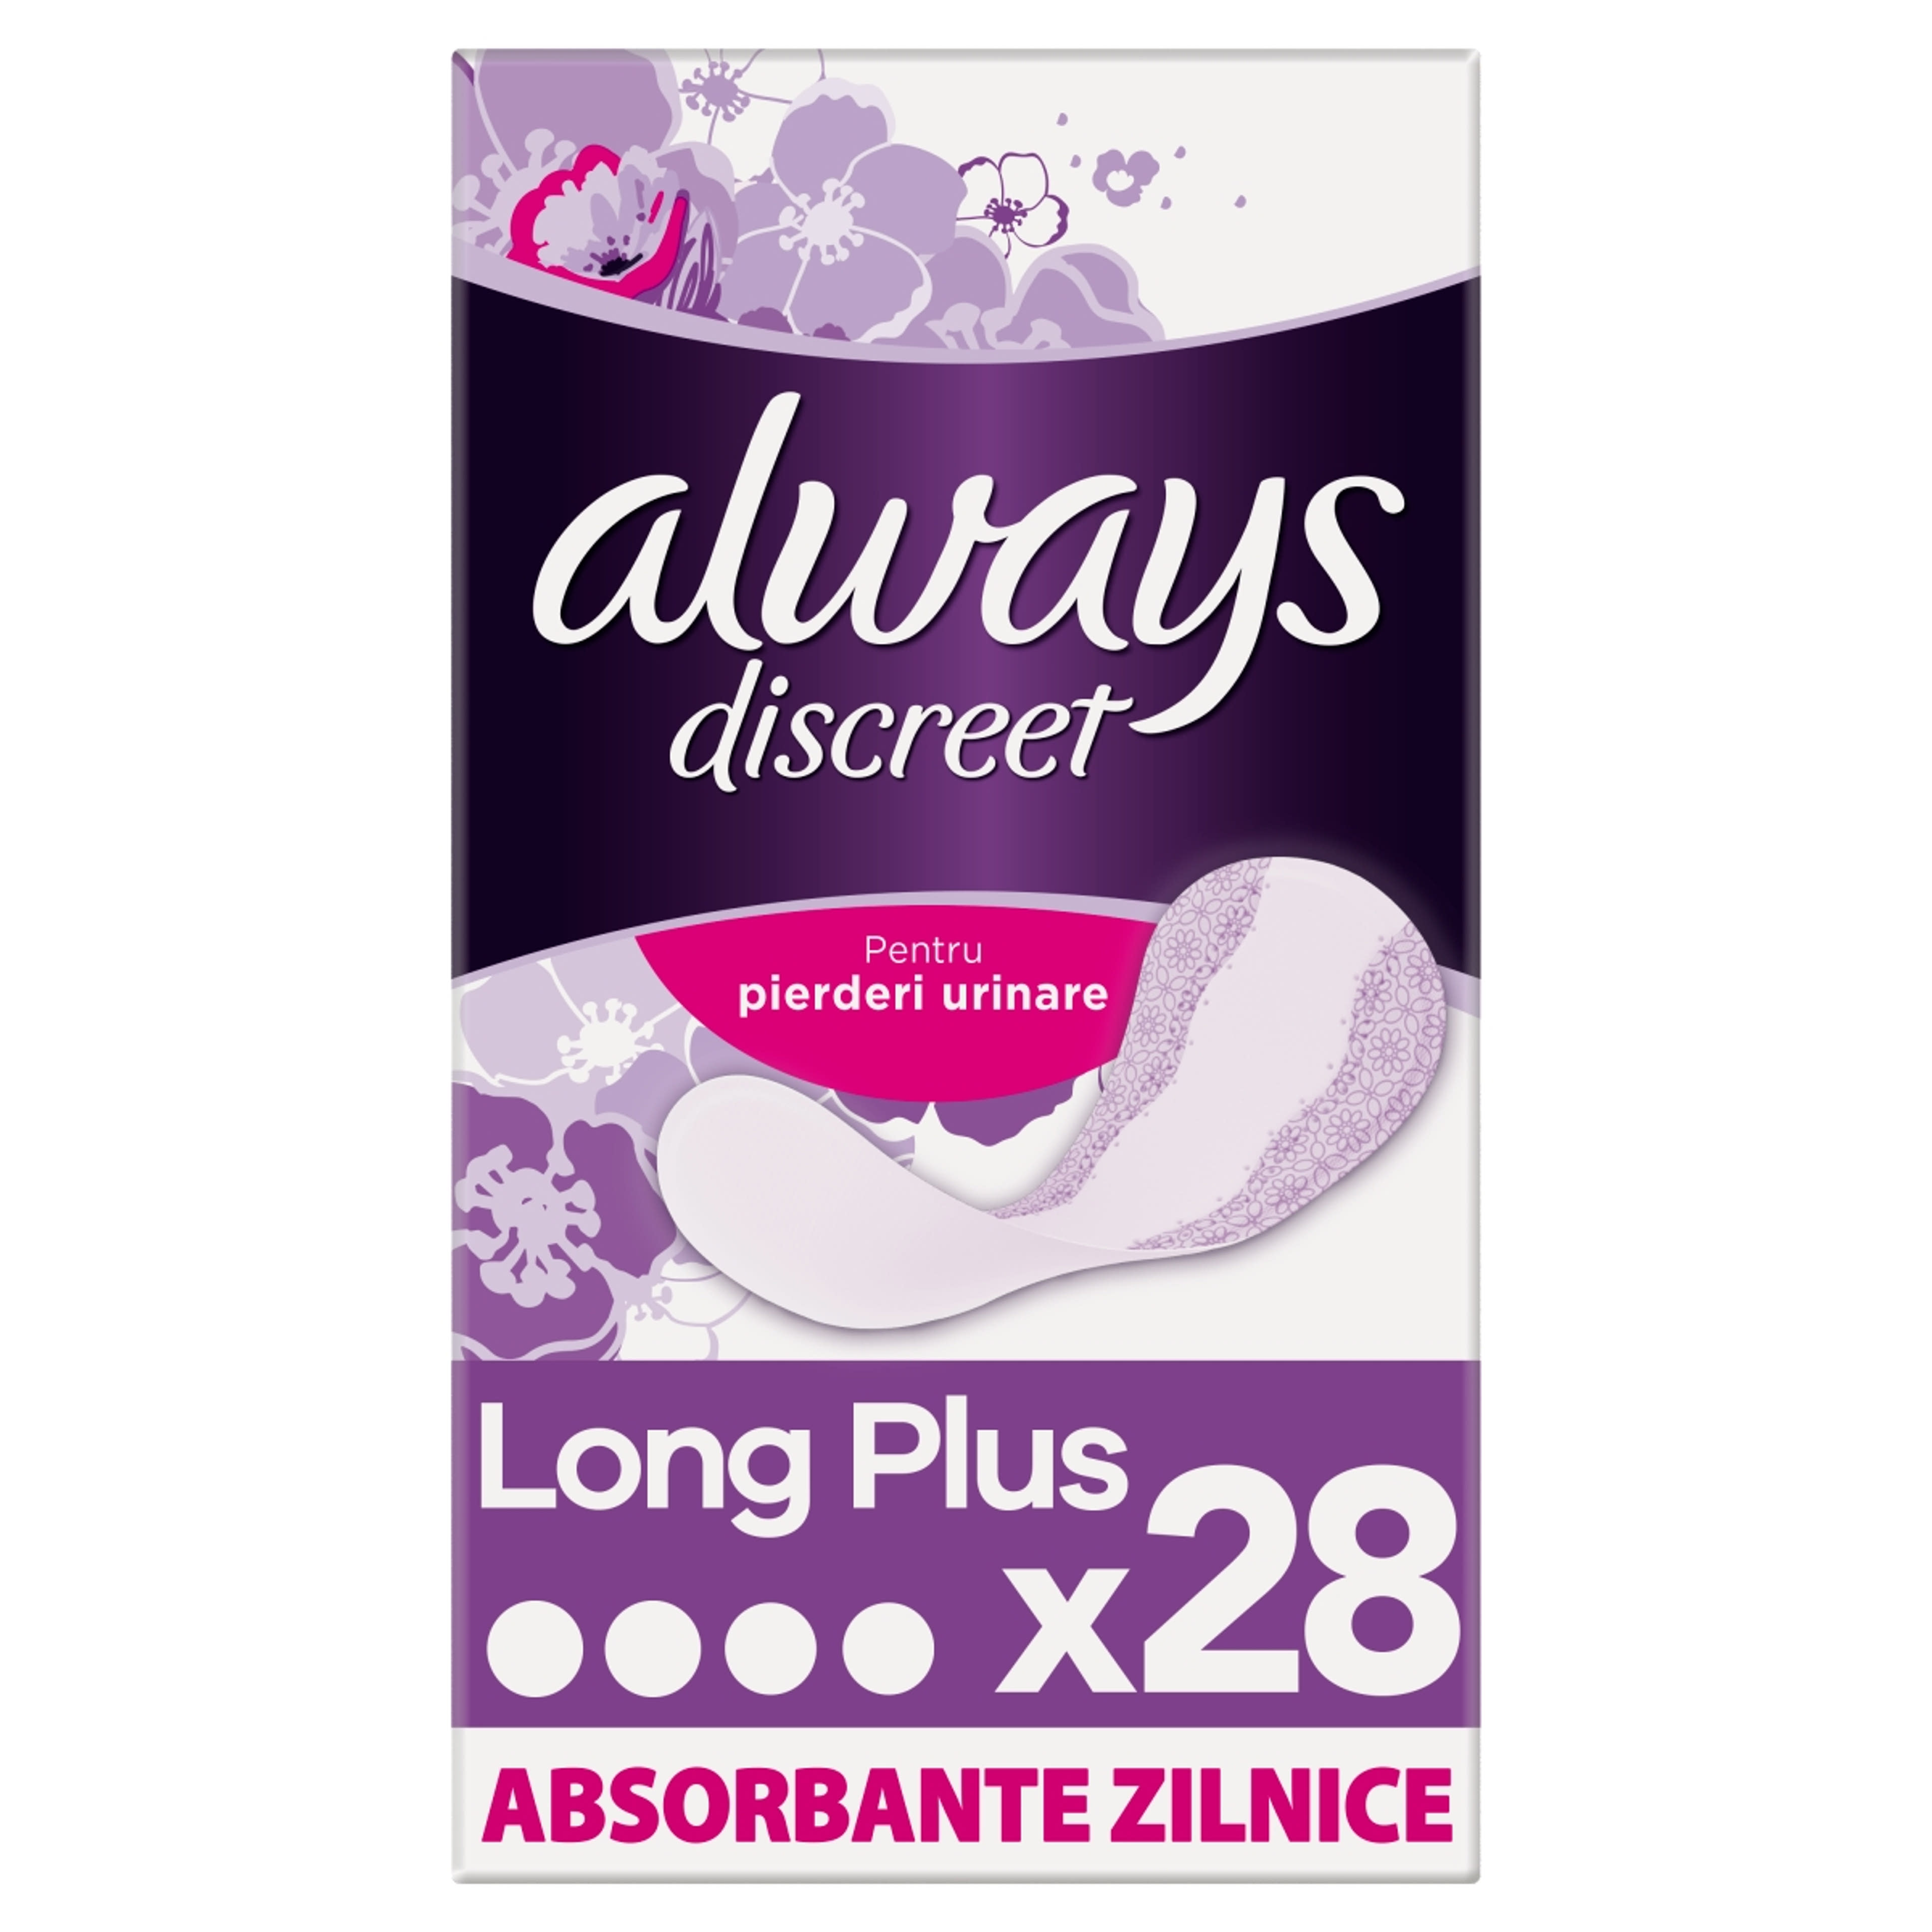 Always Discreet Long Plus Inkontinencia tisztasági betét - 28 db-2